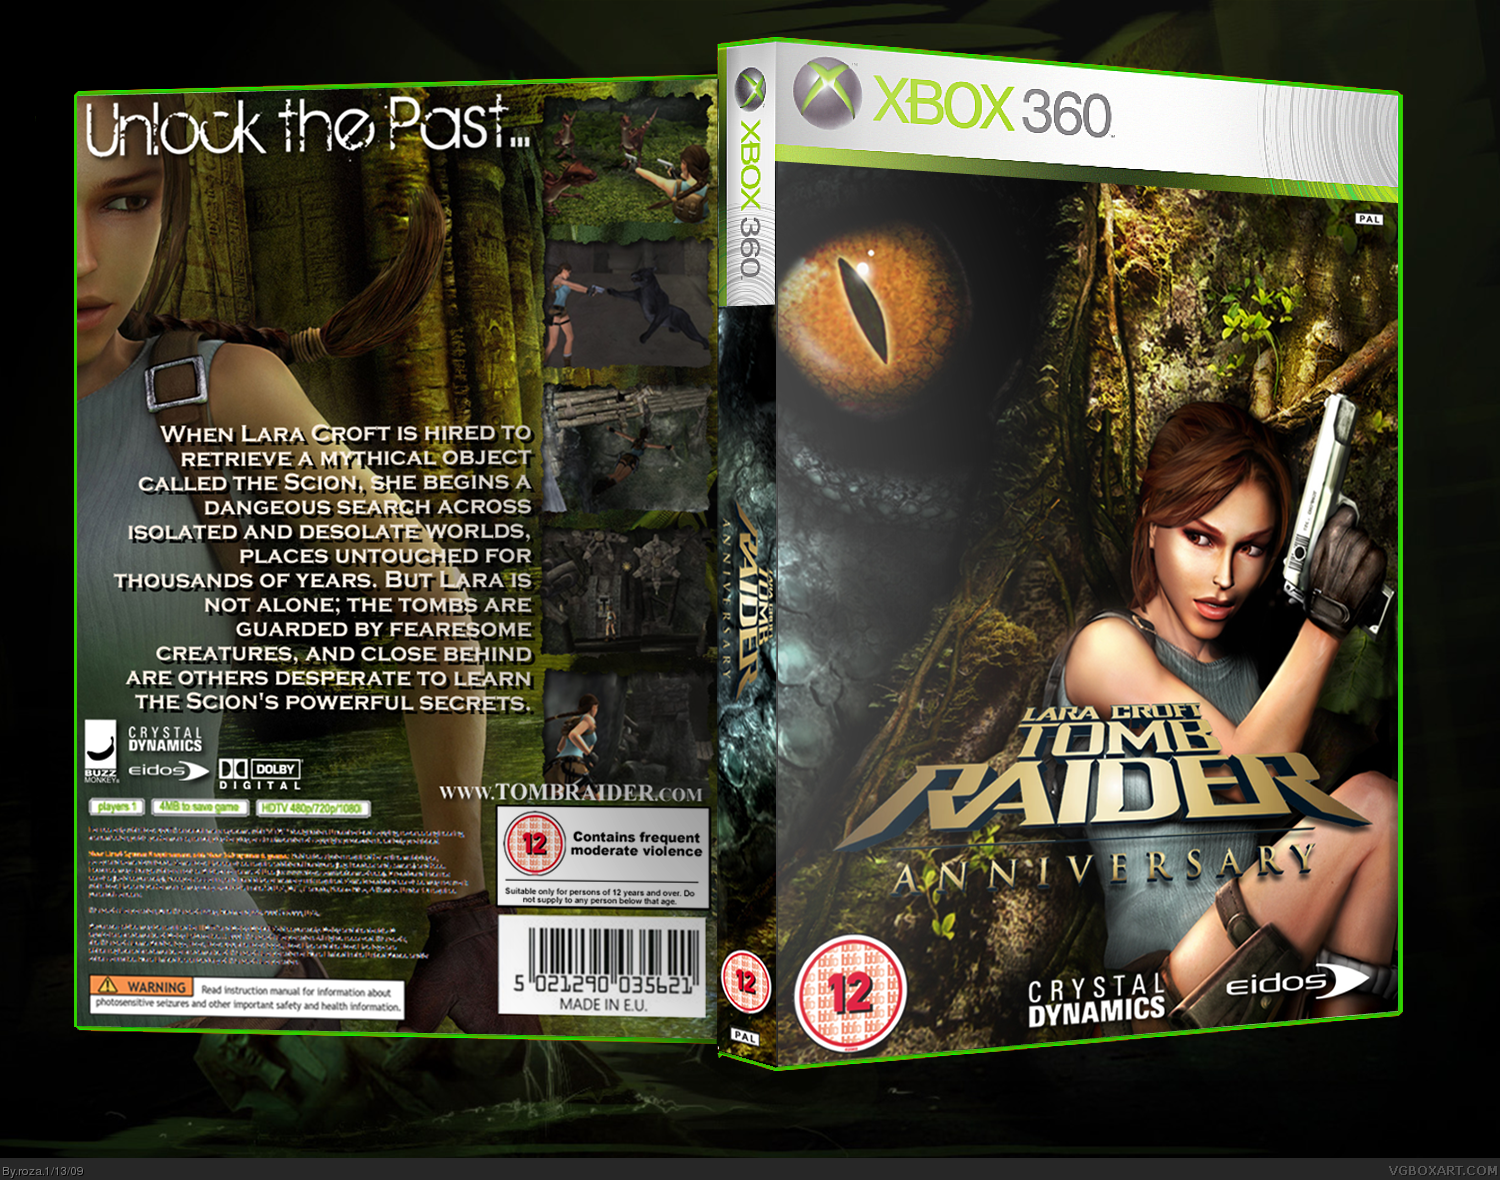 Lara Croft Tomb Raider: Anniversary box cover